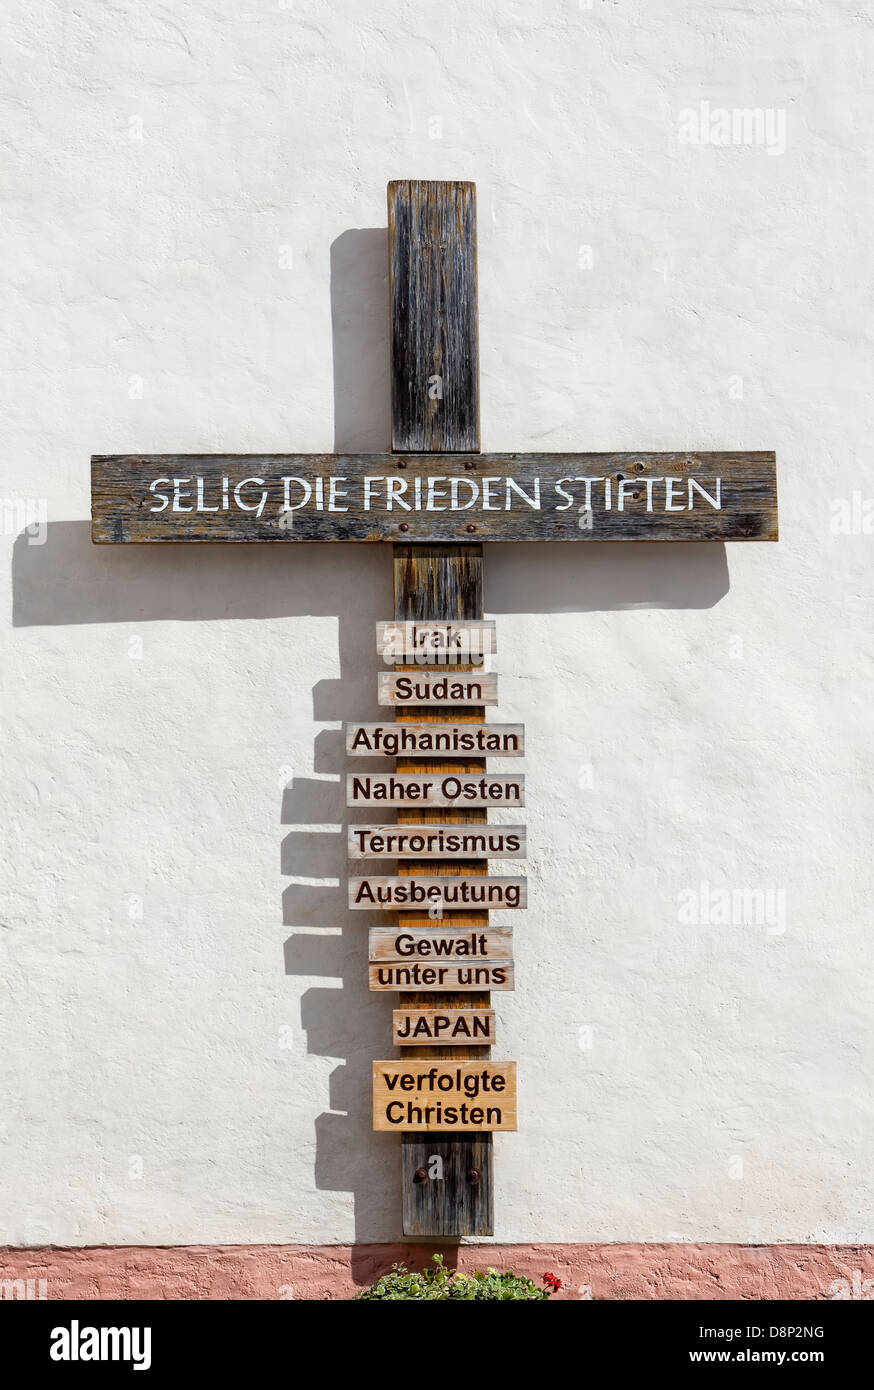 Christian croix de bois comme un mémorial, Weilburg Lahn, Hesse, Germany, Europe Banque D'Images